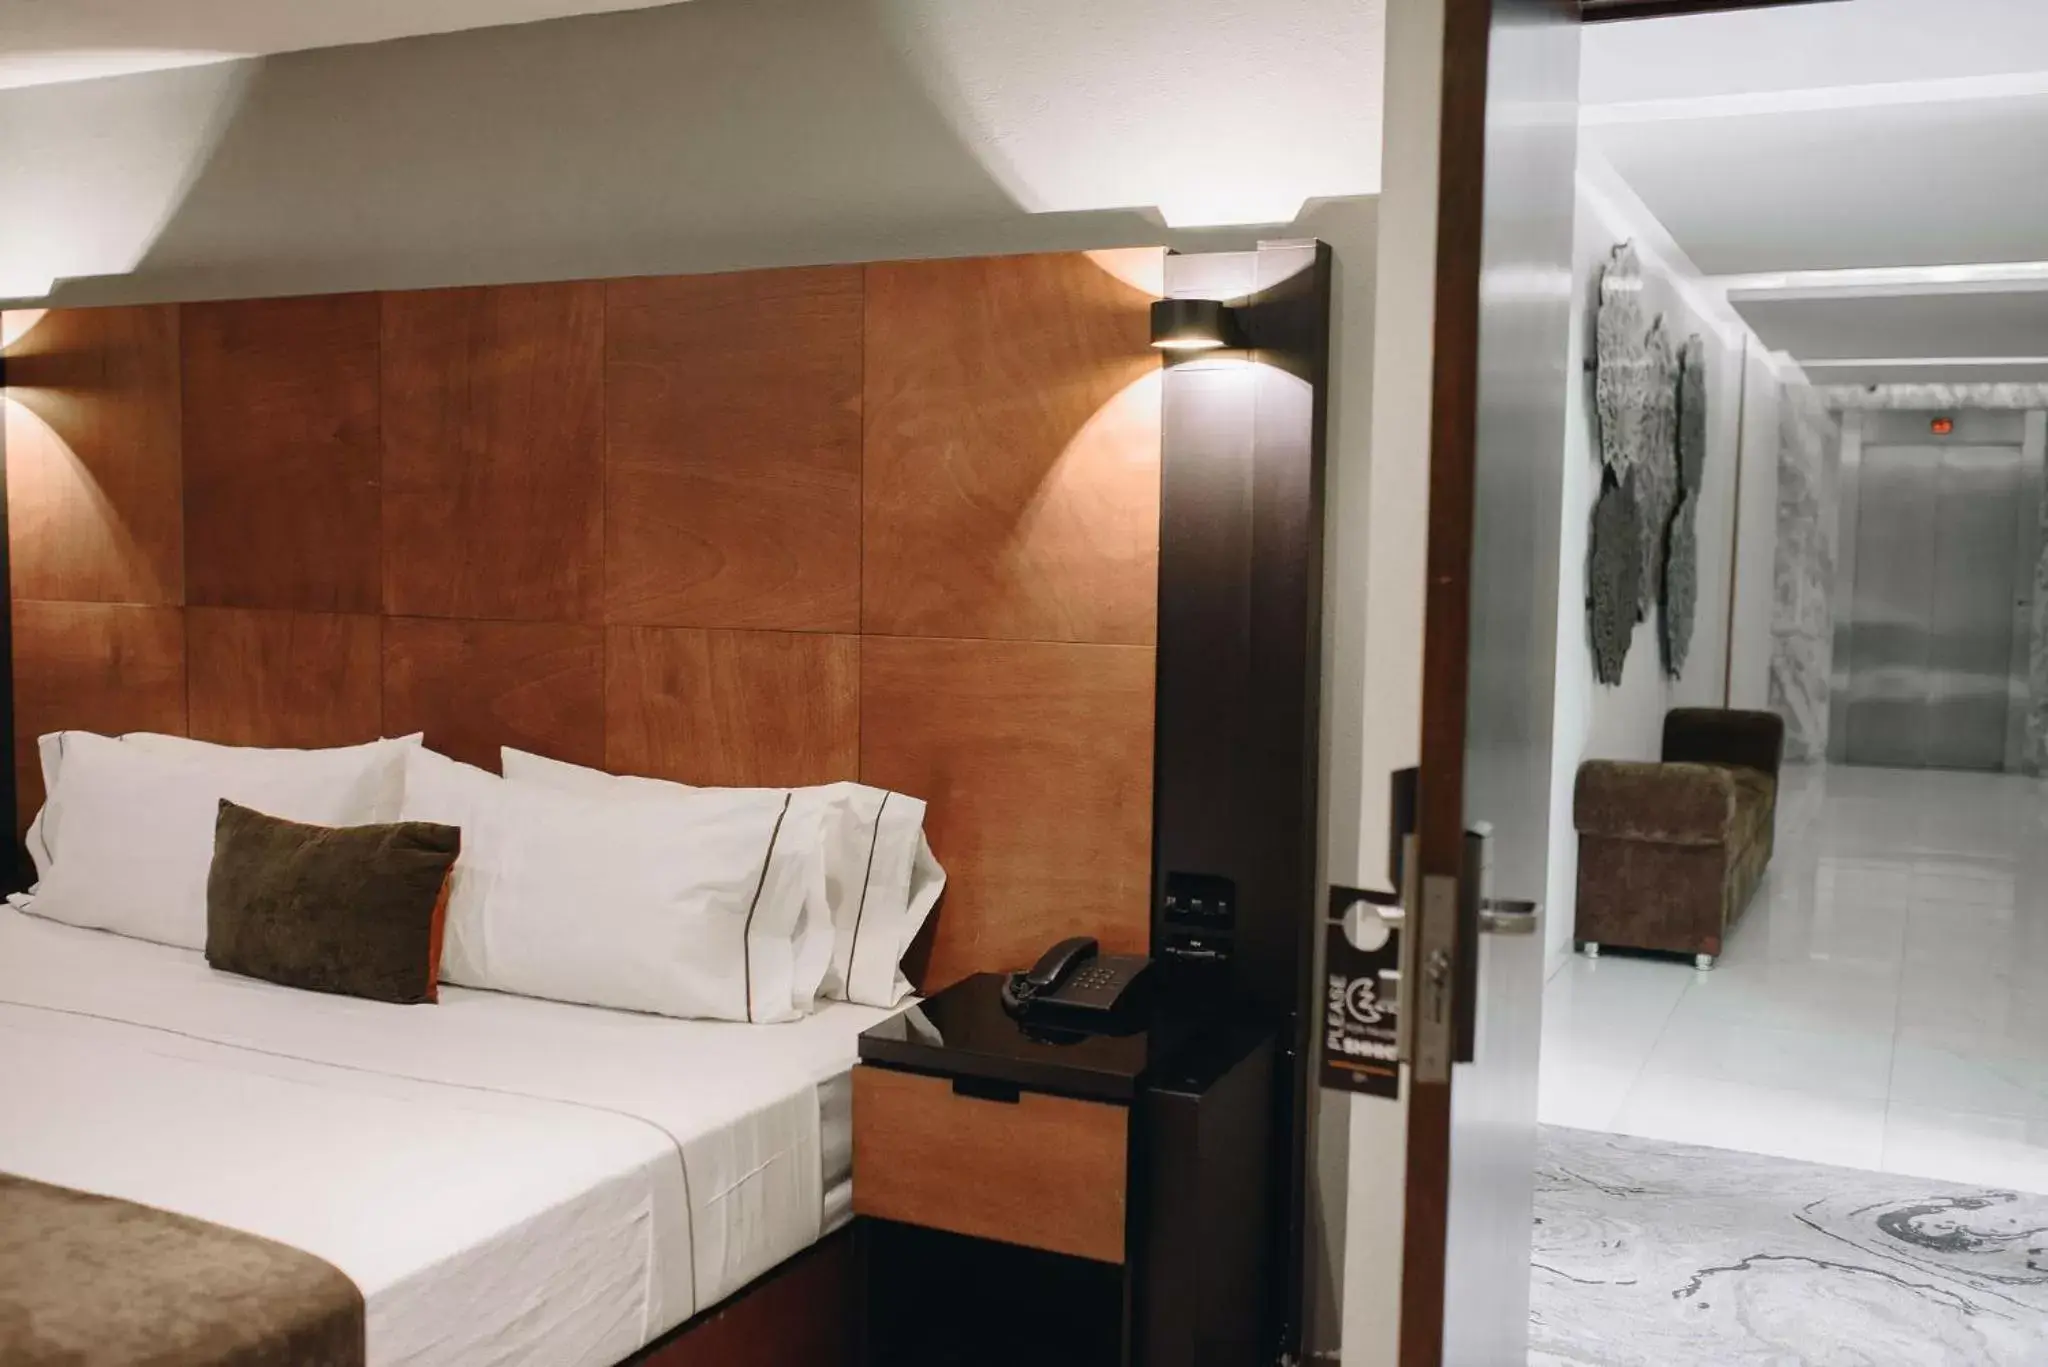 Bed in Hotel Dali Plaza Ejecutivo